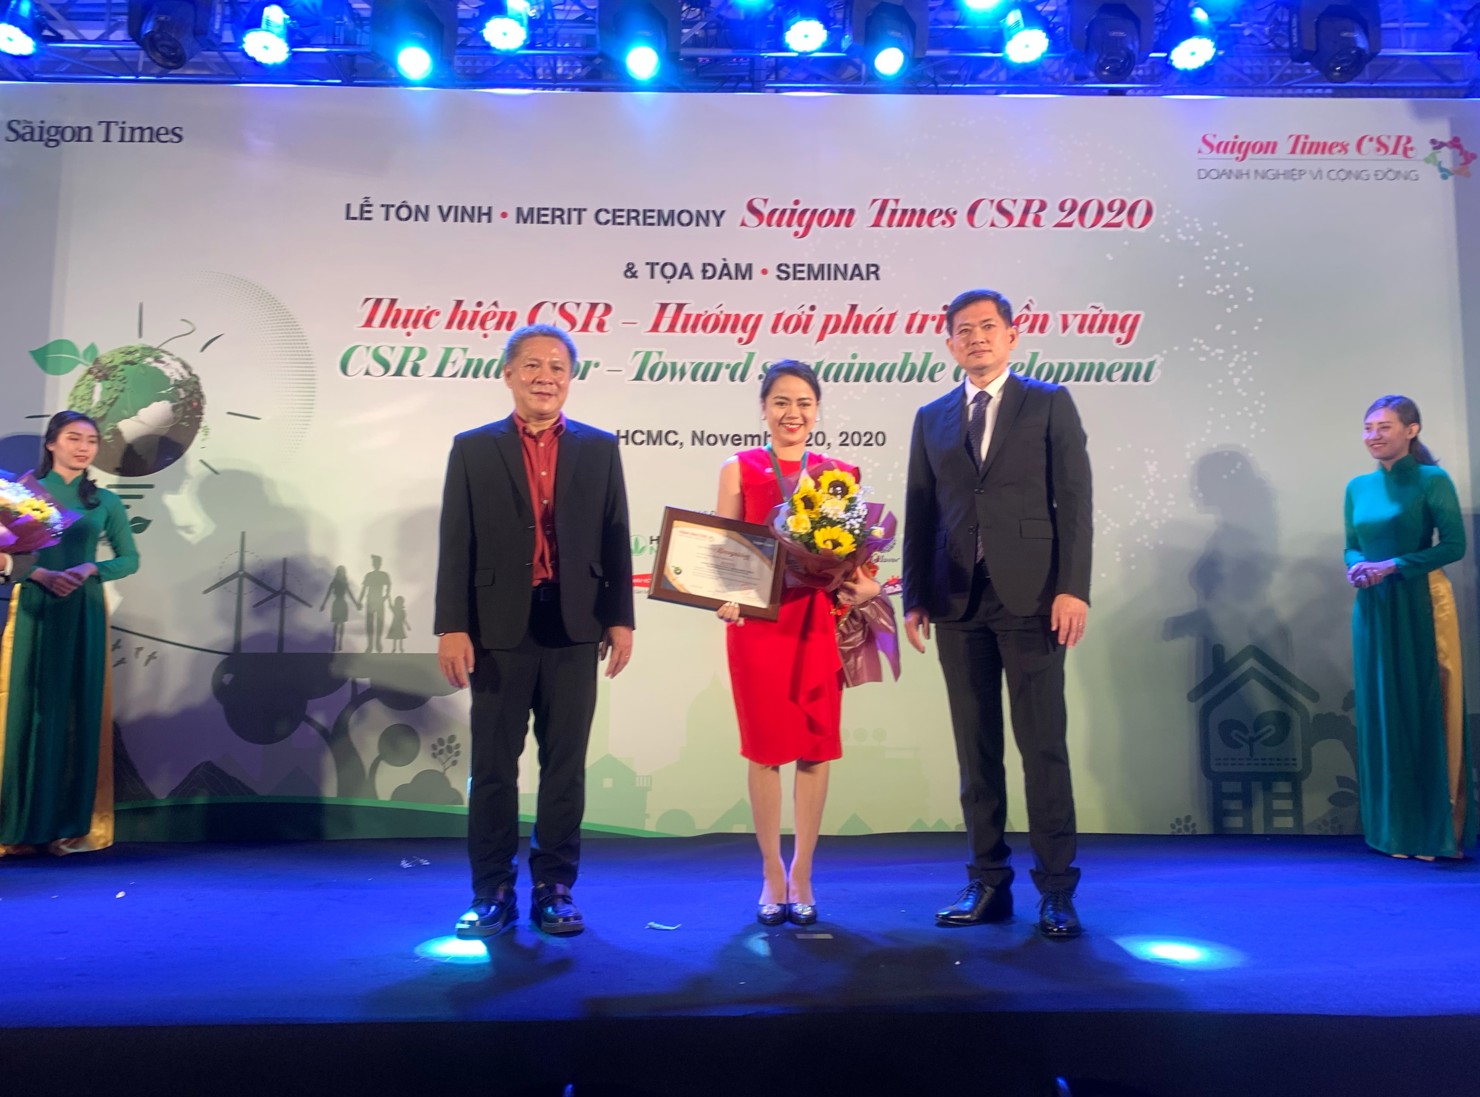 Generali Việt Nam vừa được vinh danh “Doanh nghiệp vì Cộng đồng – Saigon Times CSR 2020”, ghi nhận những đóng góp của Công ty cho sự phát triển bền vững của cộng đồng.   